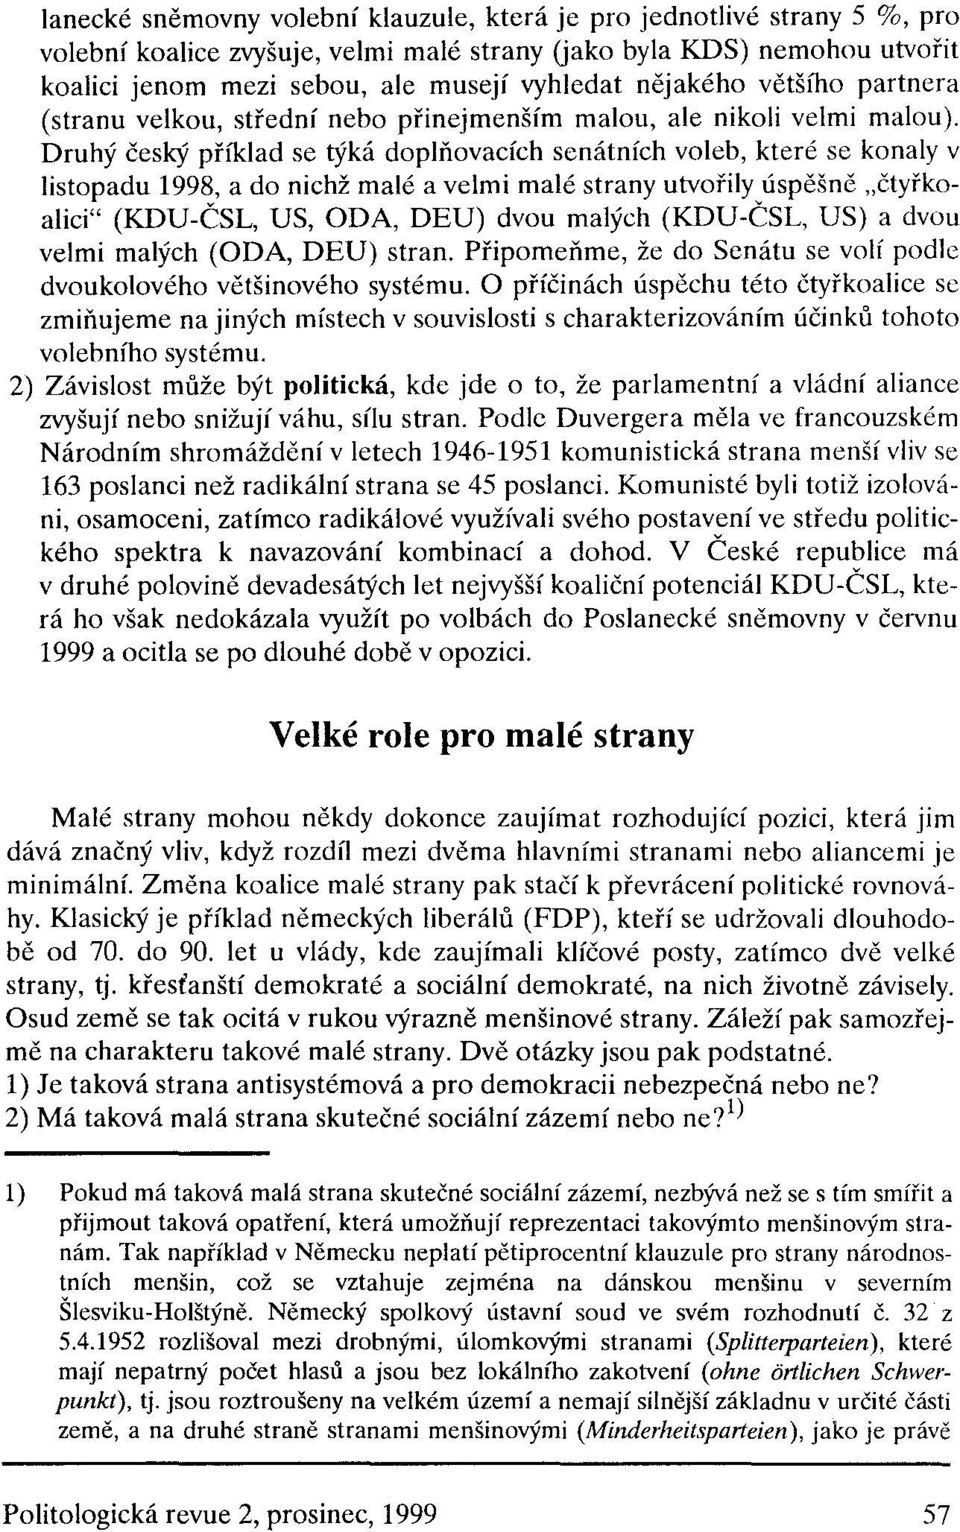 Druhý český příklad se týká doplňovacích senátních voleb, které se konaly v listopadu 1998, a do nichž malé a velmi malé strany utvořily úspěšně "čtyřkoalici" (KDU-ČSL, US, ODA, DEU) dvou malých